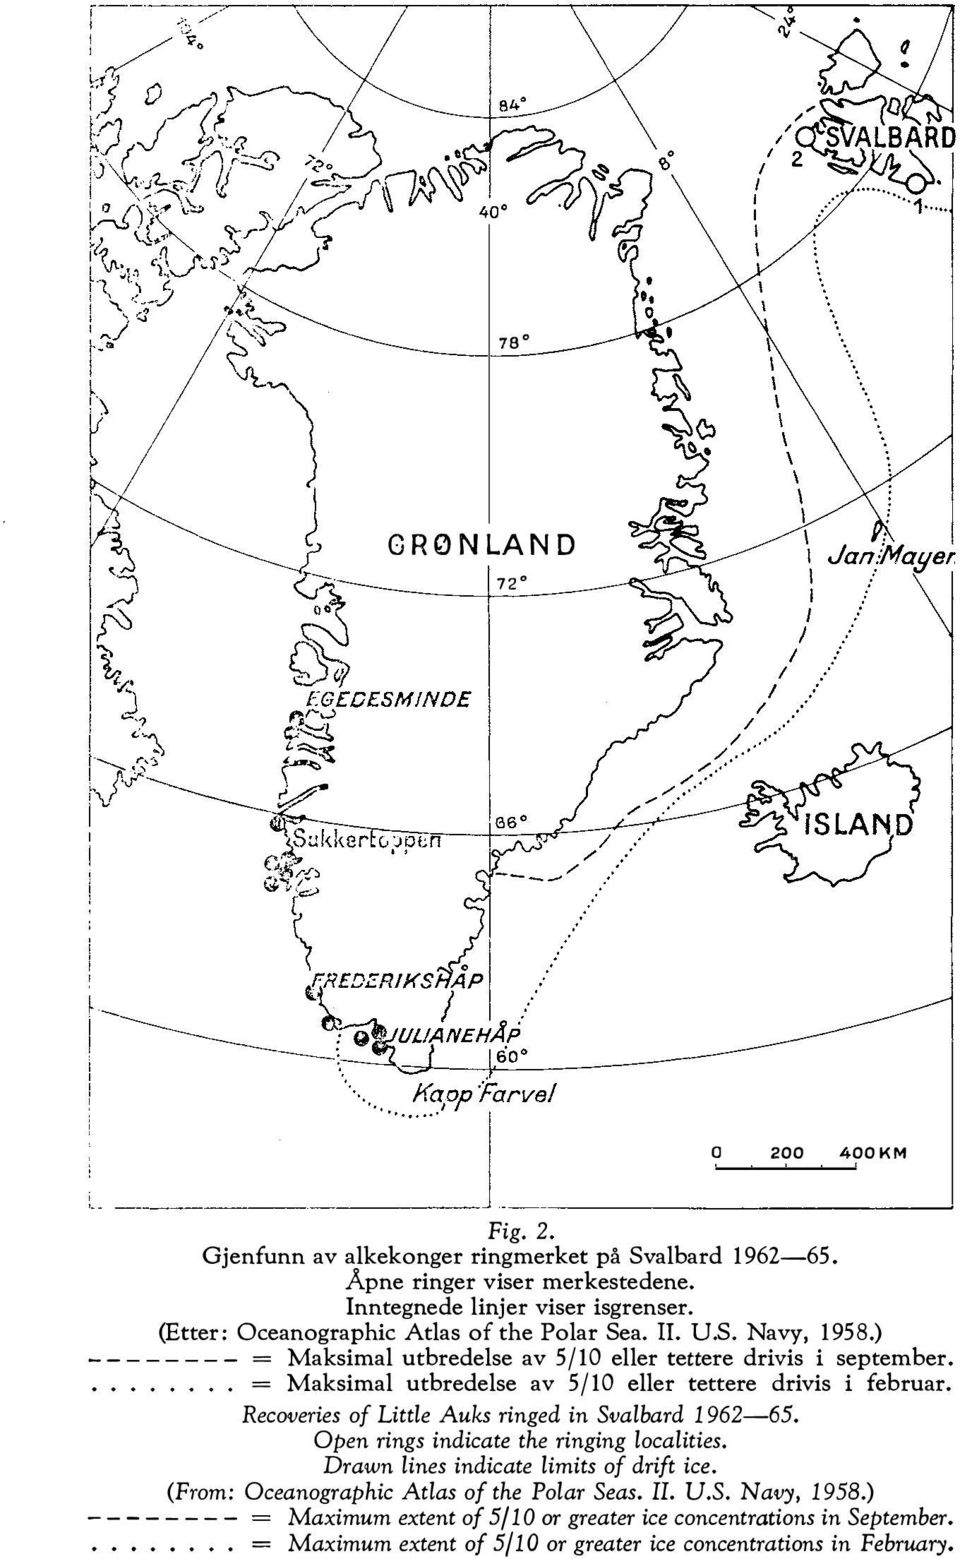 ........ = Maksimal utbredelse av 5/10 eller tettere drivis i februar. Recoveries of Little Auks ringed in Svalbard 1962-65. Open rings indicate the ringing localities.